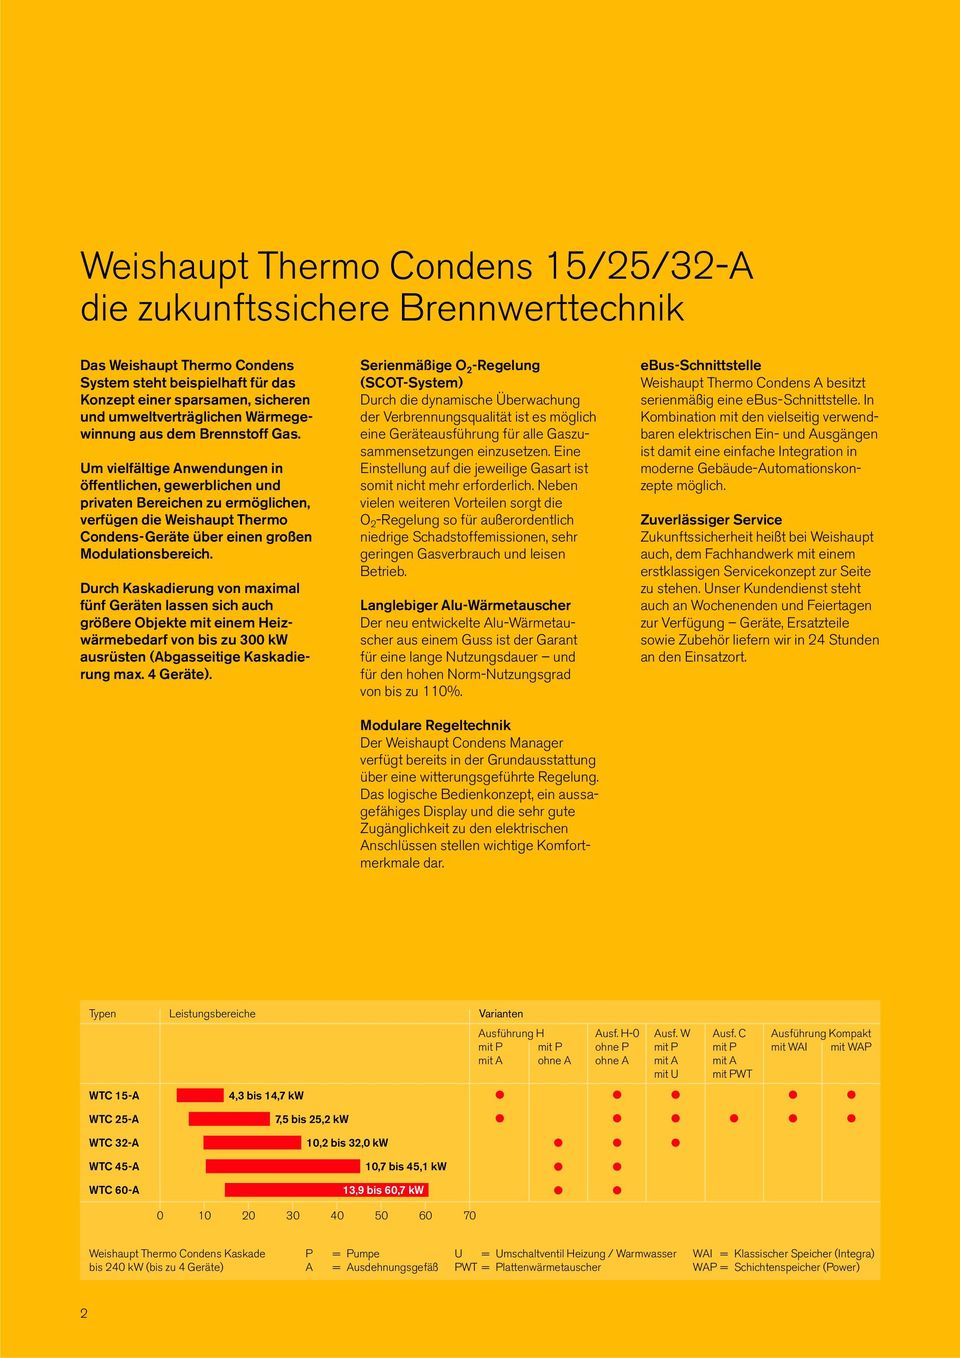 Um vielfältige Anwendungen in öffentlichen, gewerblichen und privaten Bereichen zu ermöglichen, verfügen die Weishaupt Thermo Condens-Geräte über einen großen Modulationsbereich.